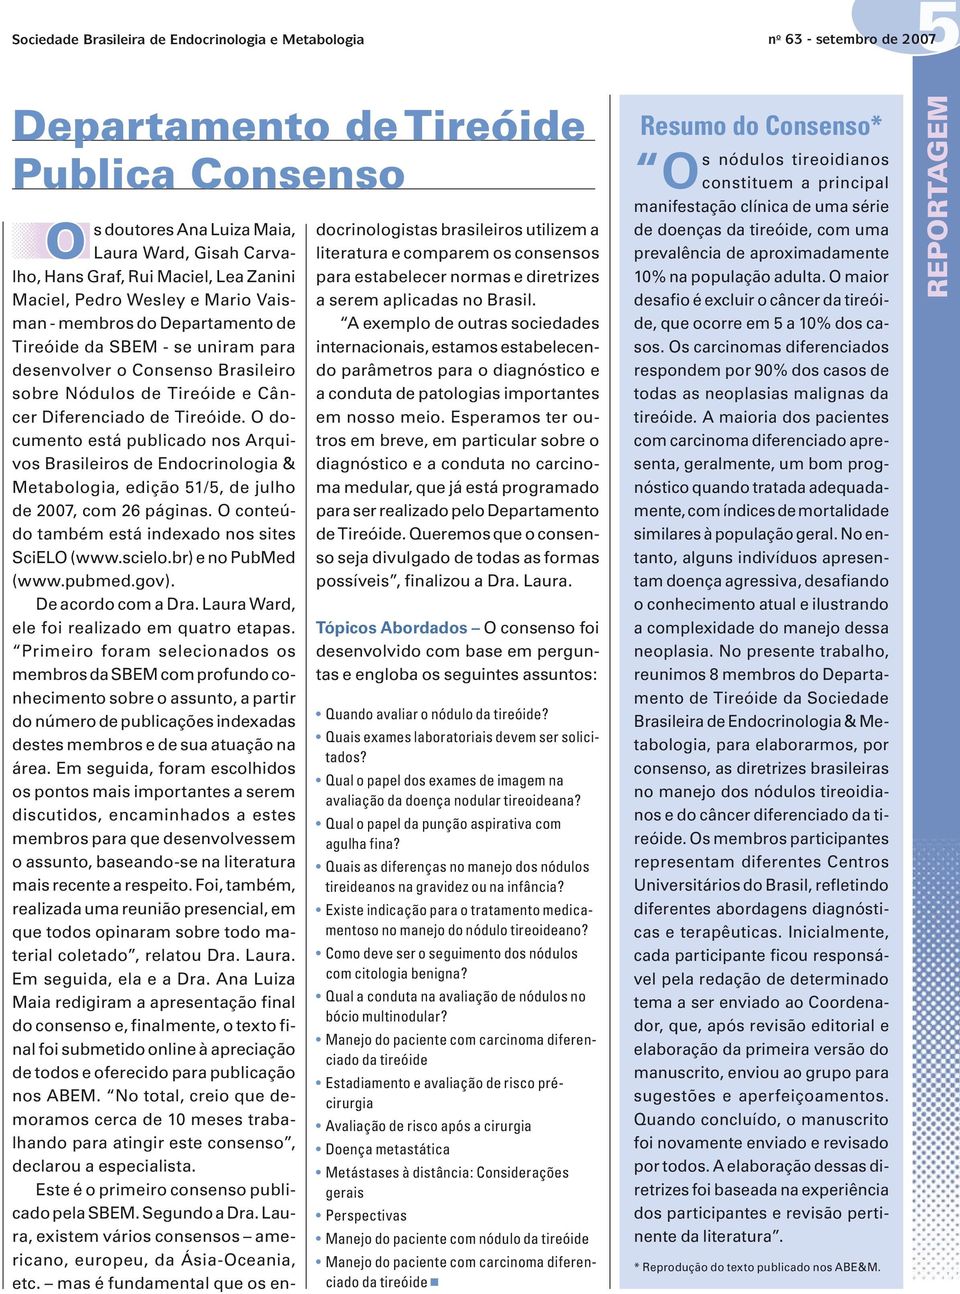 Diferenciado de Tireóide. O documento está publicado nos Arquivos Brasileiros de Endocrinologia & Metabologia, edição 51/5, de julho de 2007, com 26 páginas.